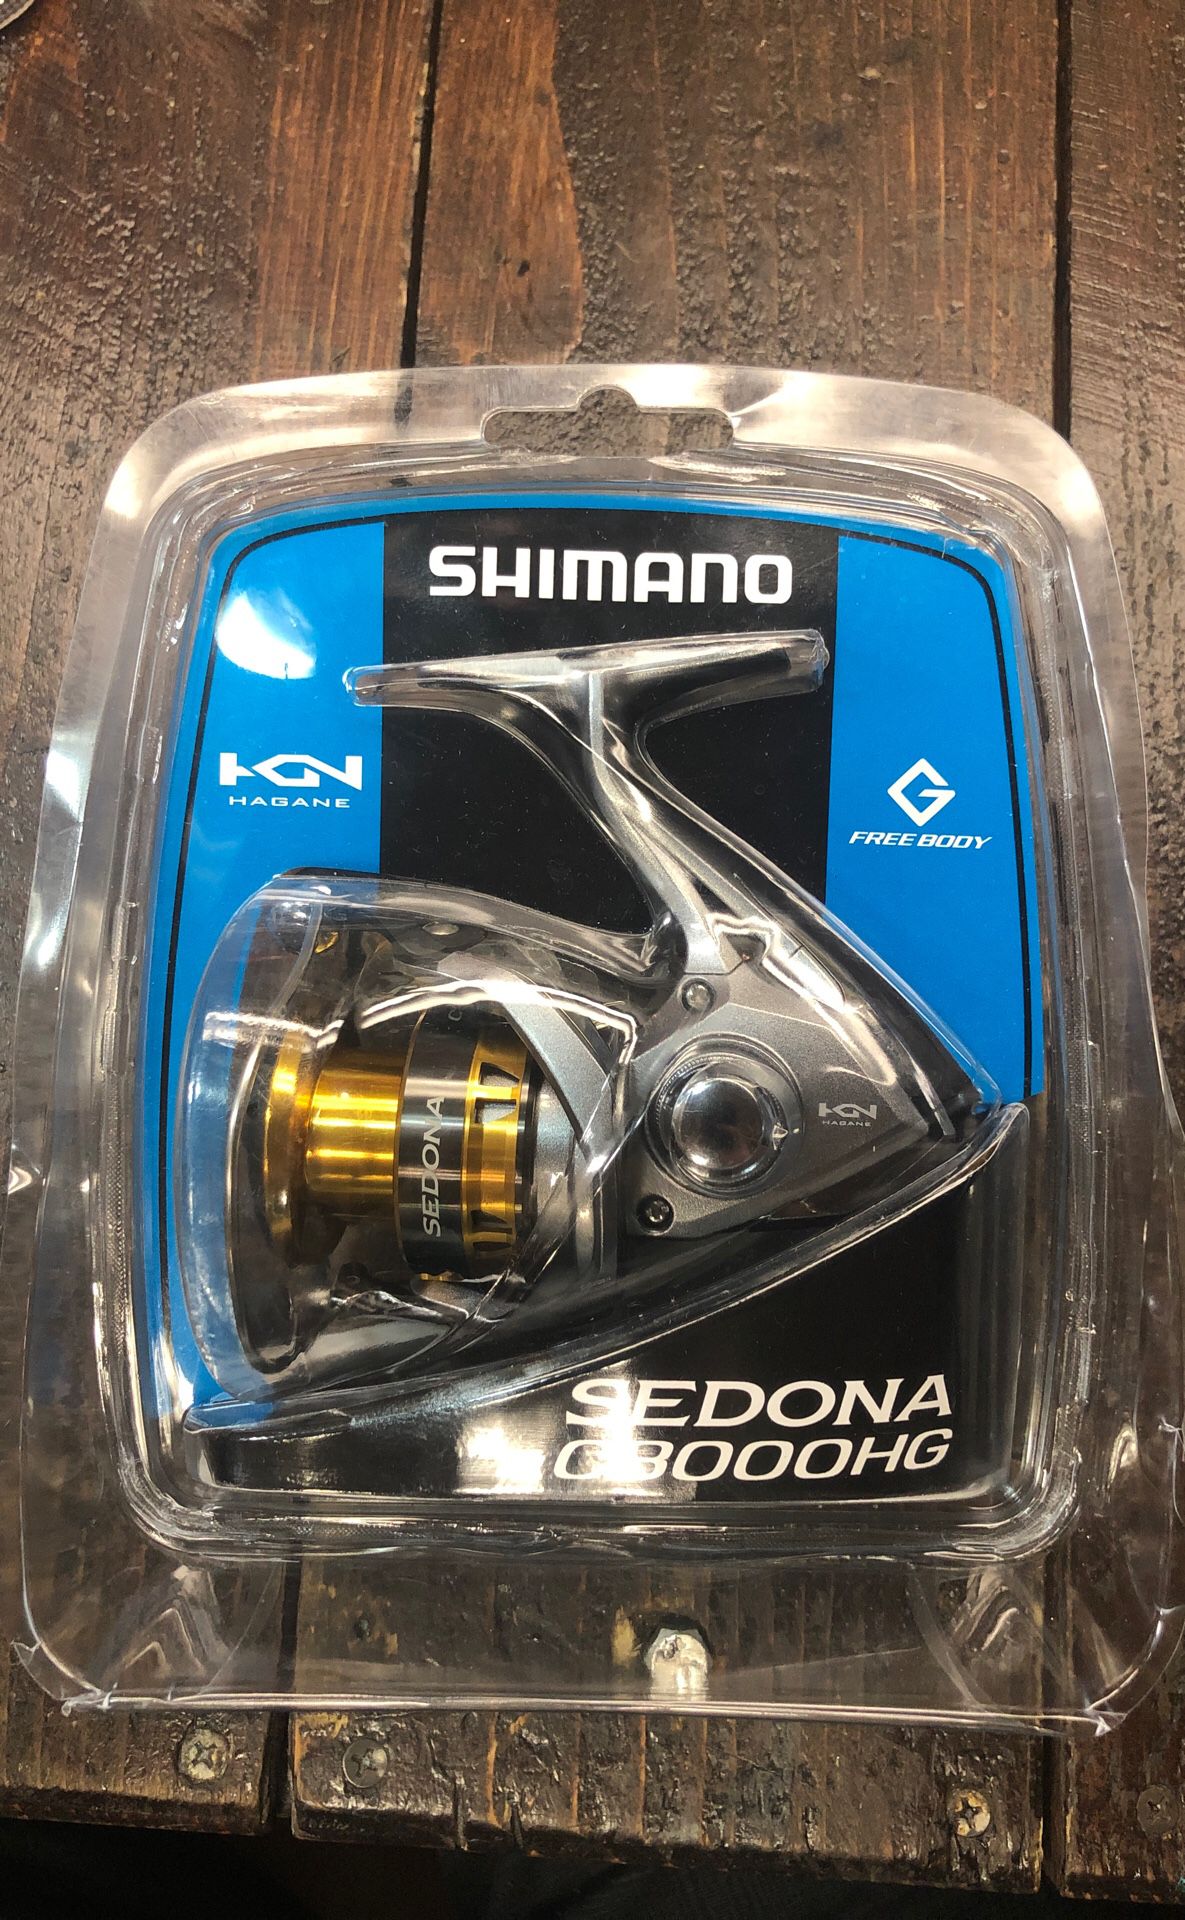 SHIMANO SEDONA C3000HG fishing reel